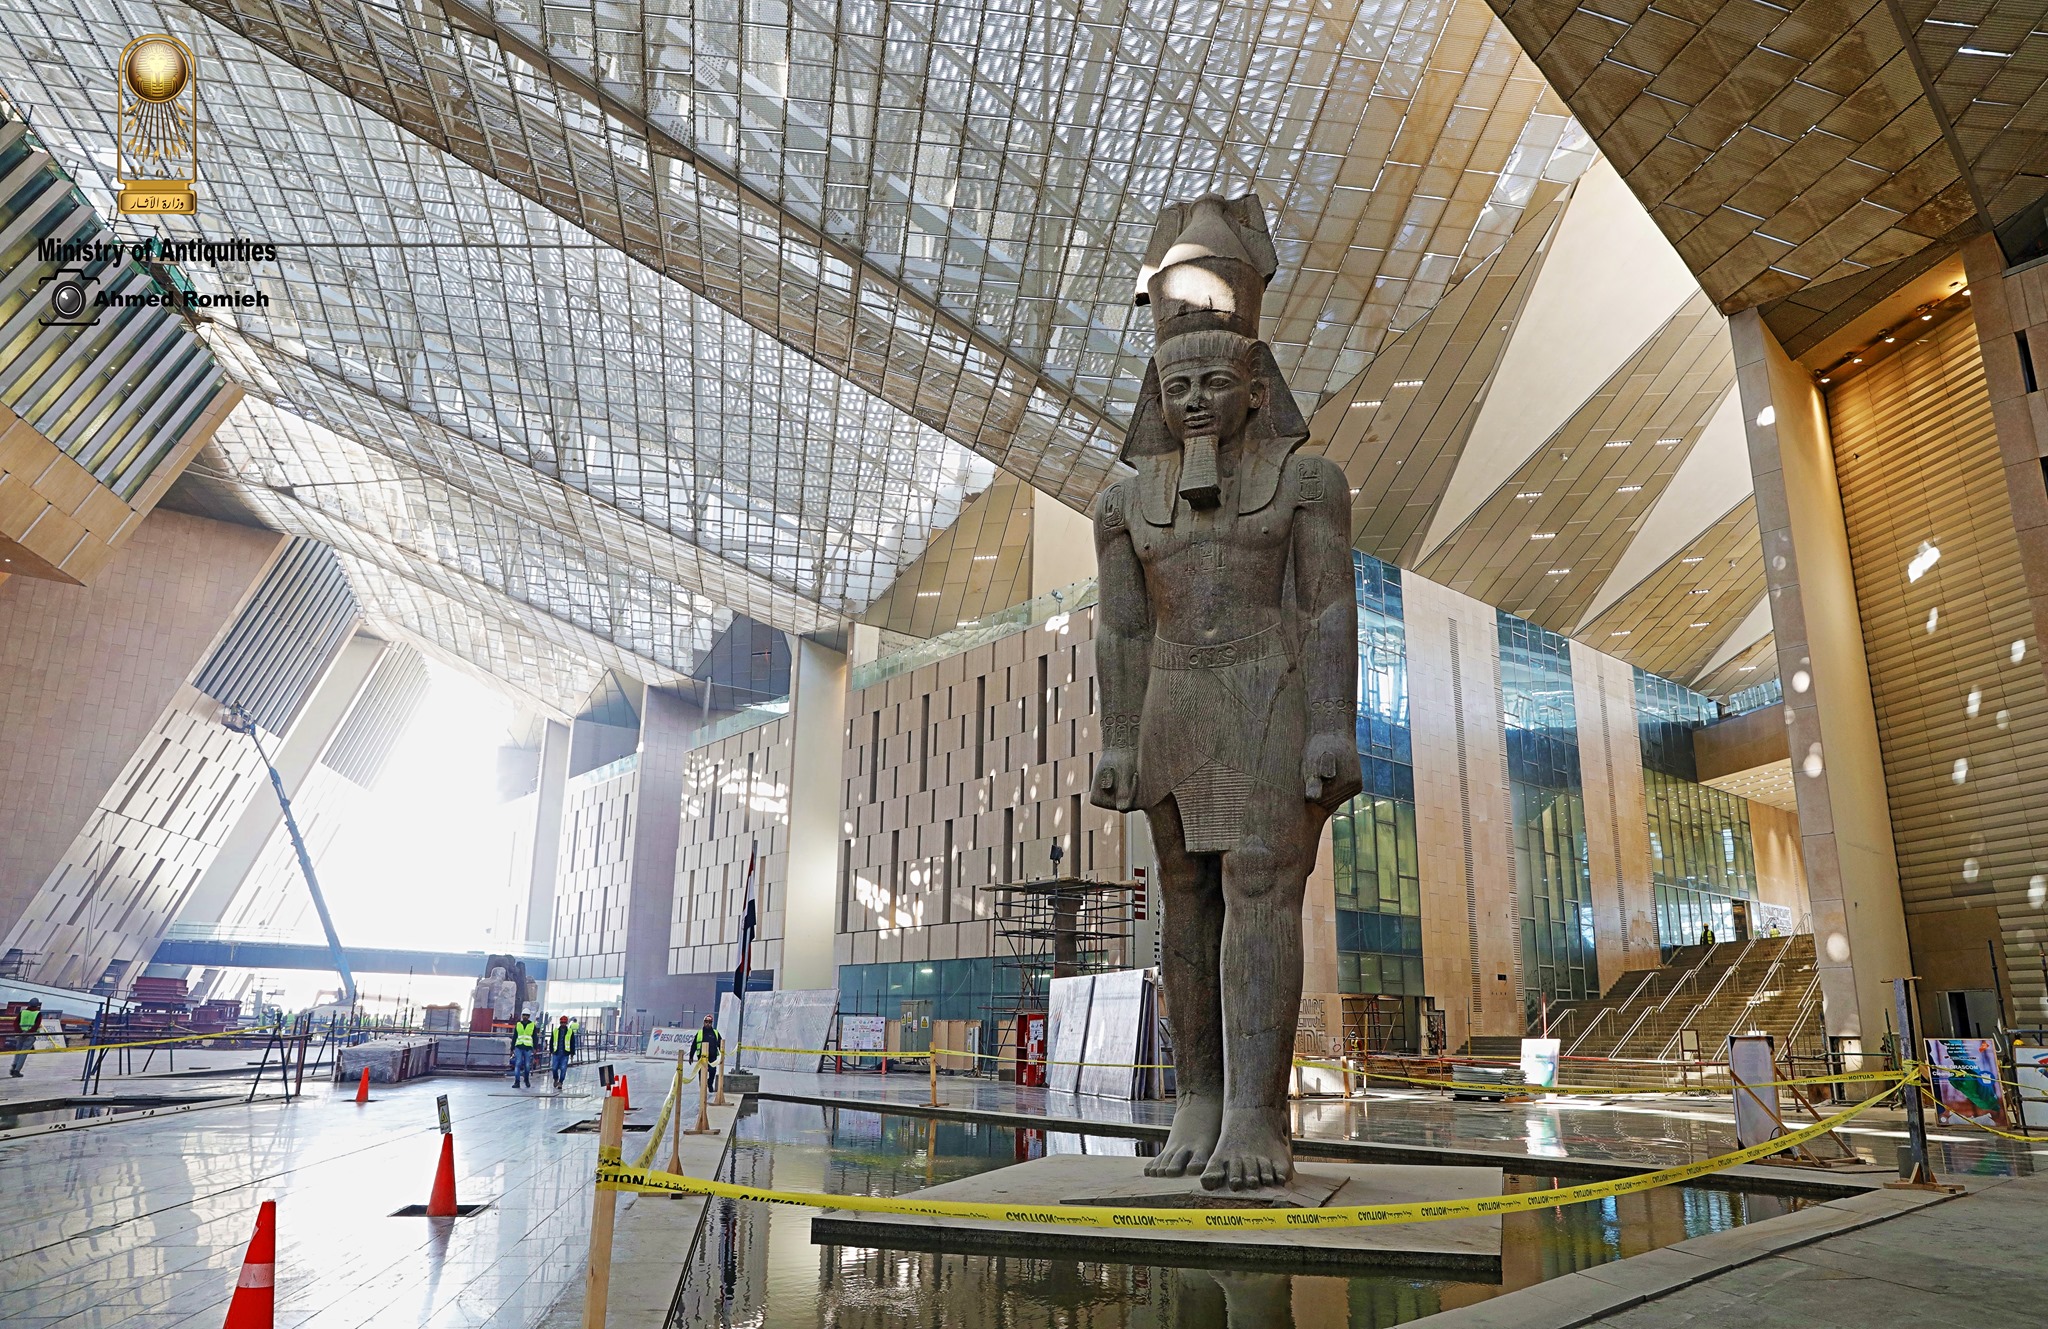   وصول قطع أثرية ضخمة إلى المتحف المصري الكبير لعرضها بالدرج العظيم